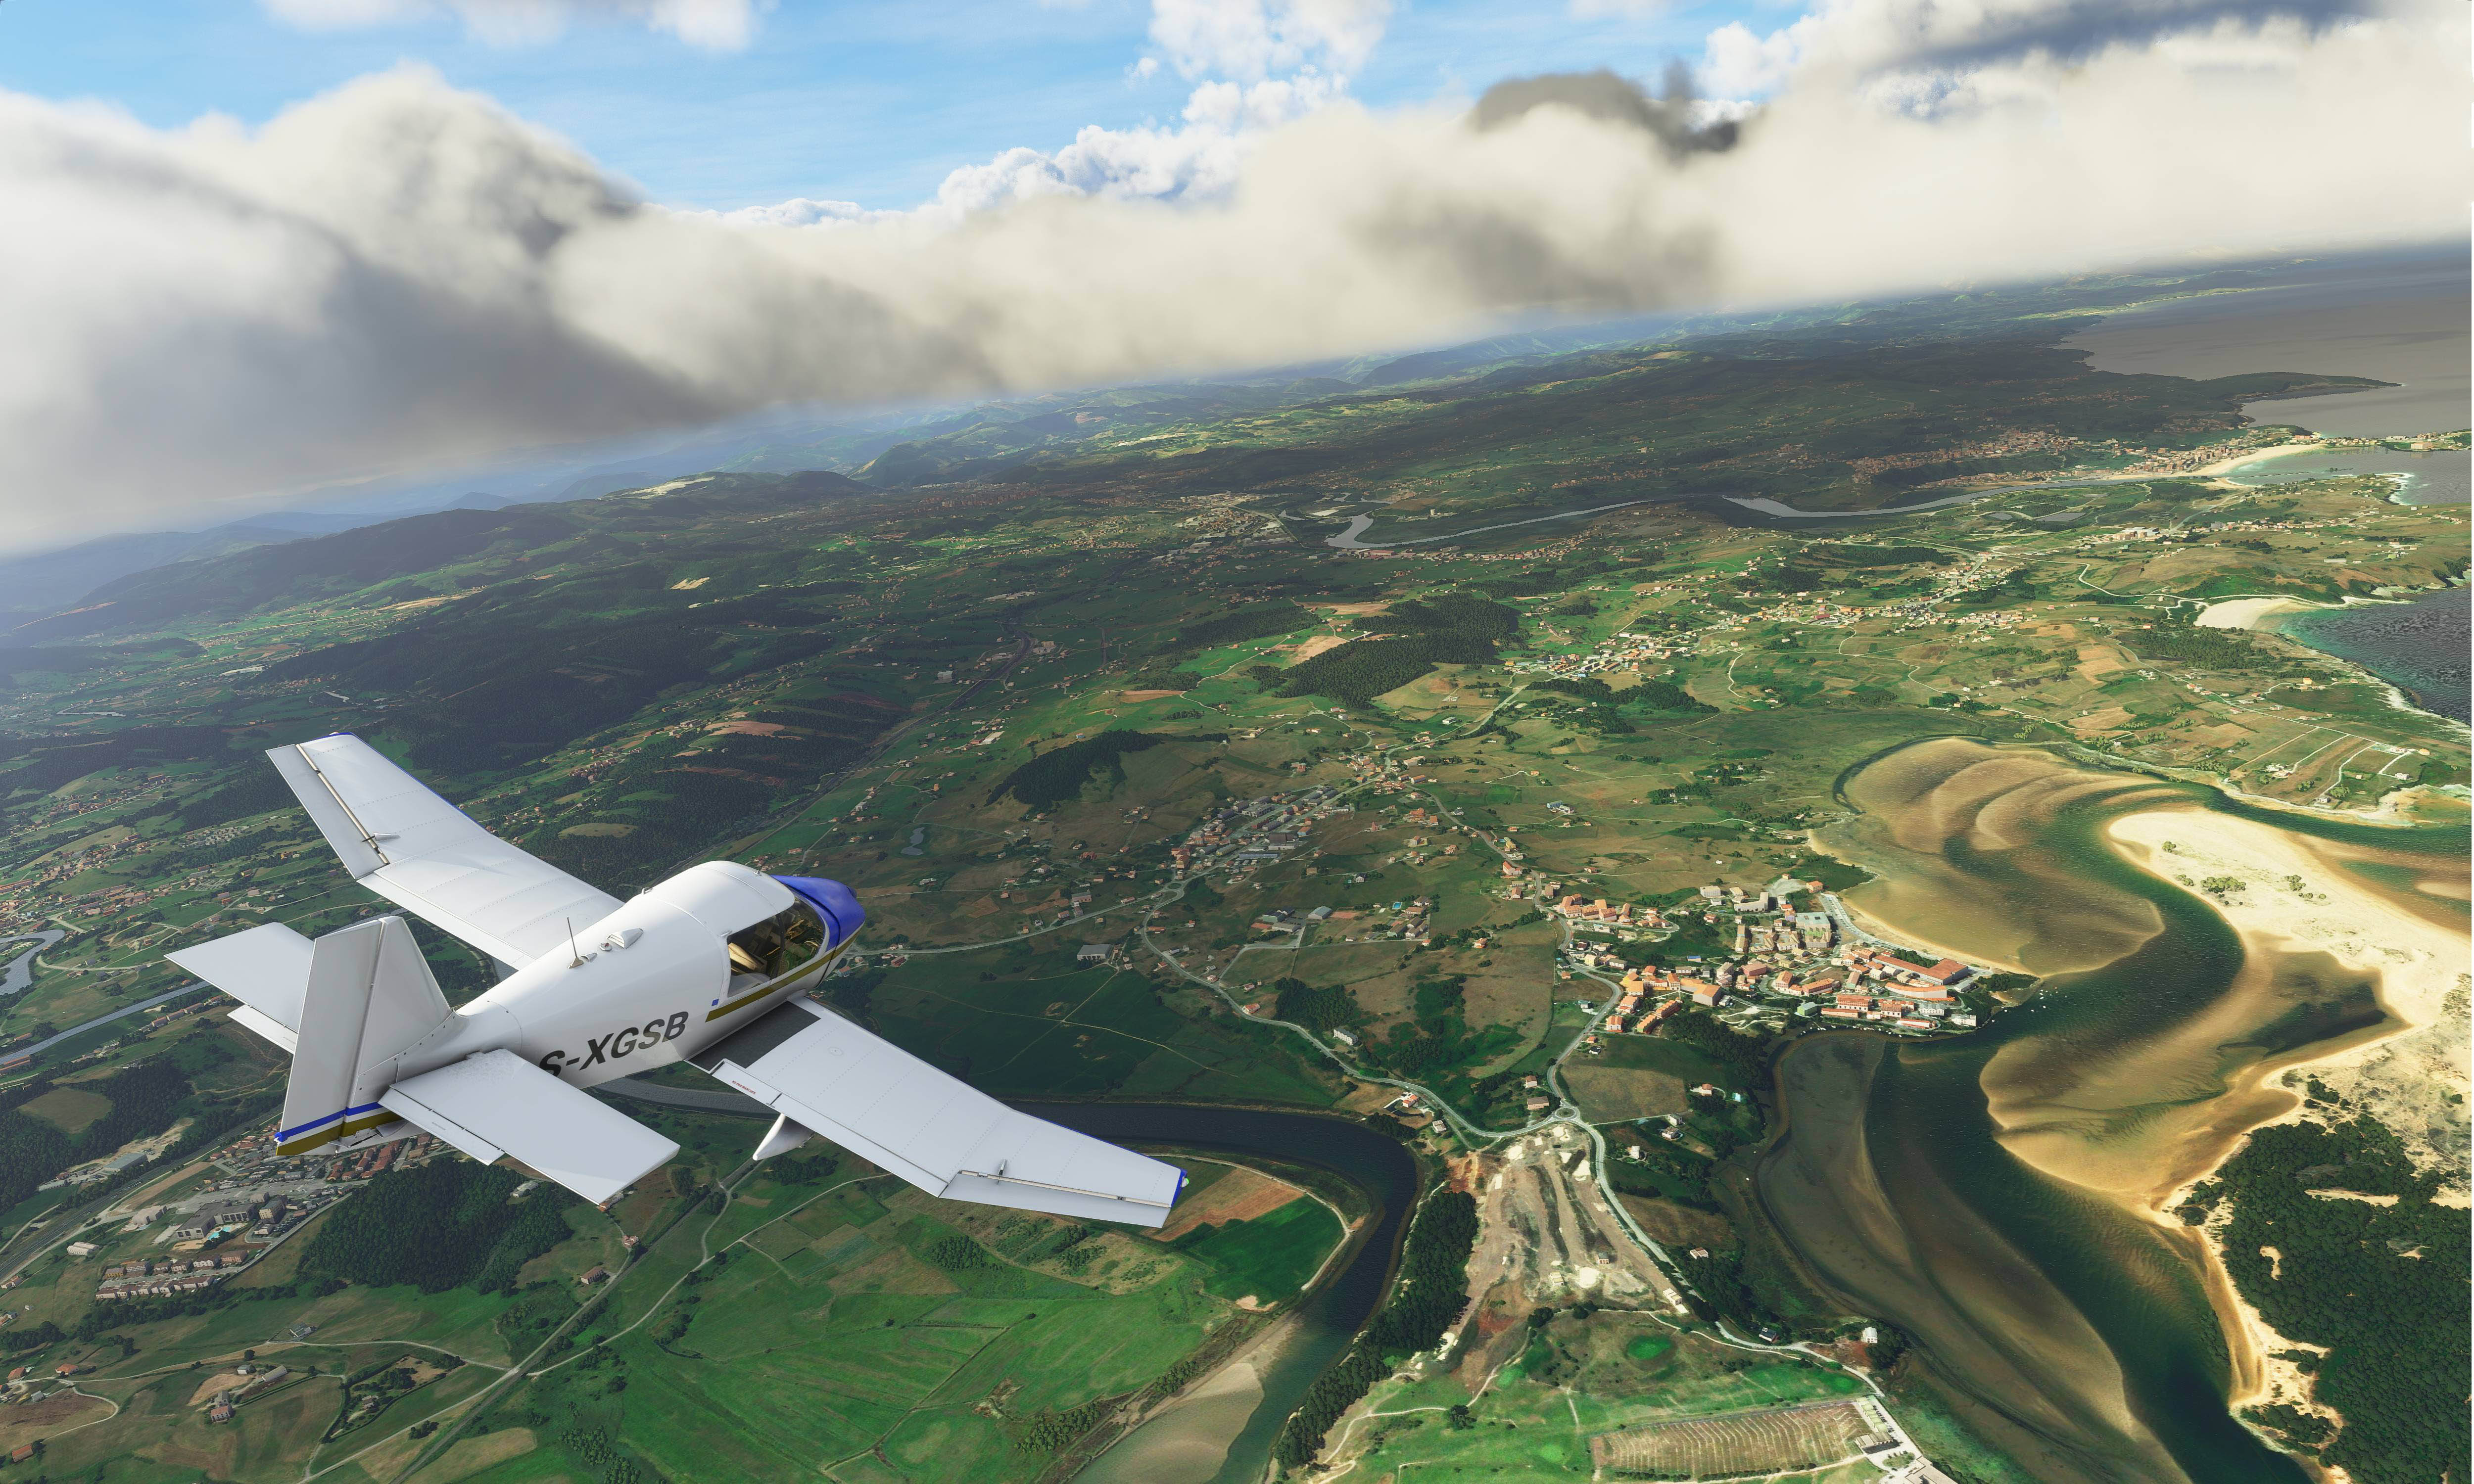  《微软飞行模拟》最新超高清截图赏析  